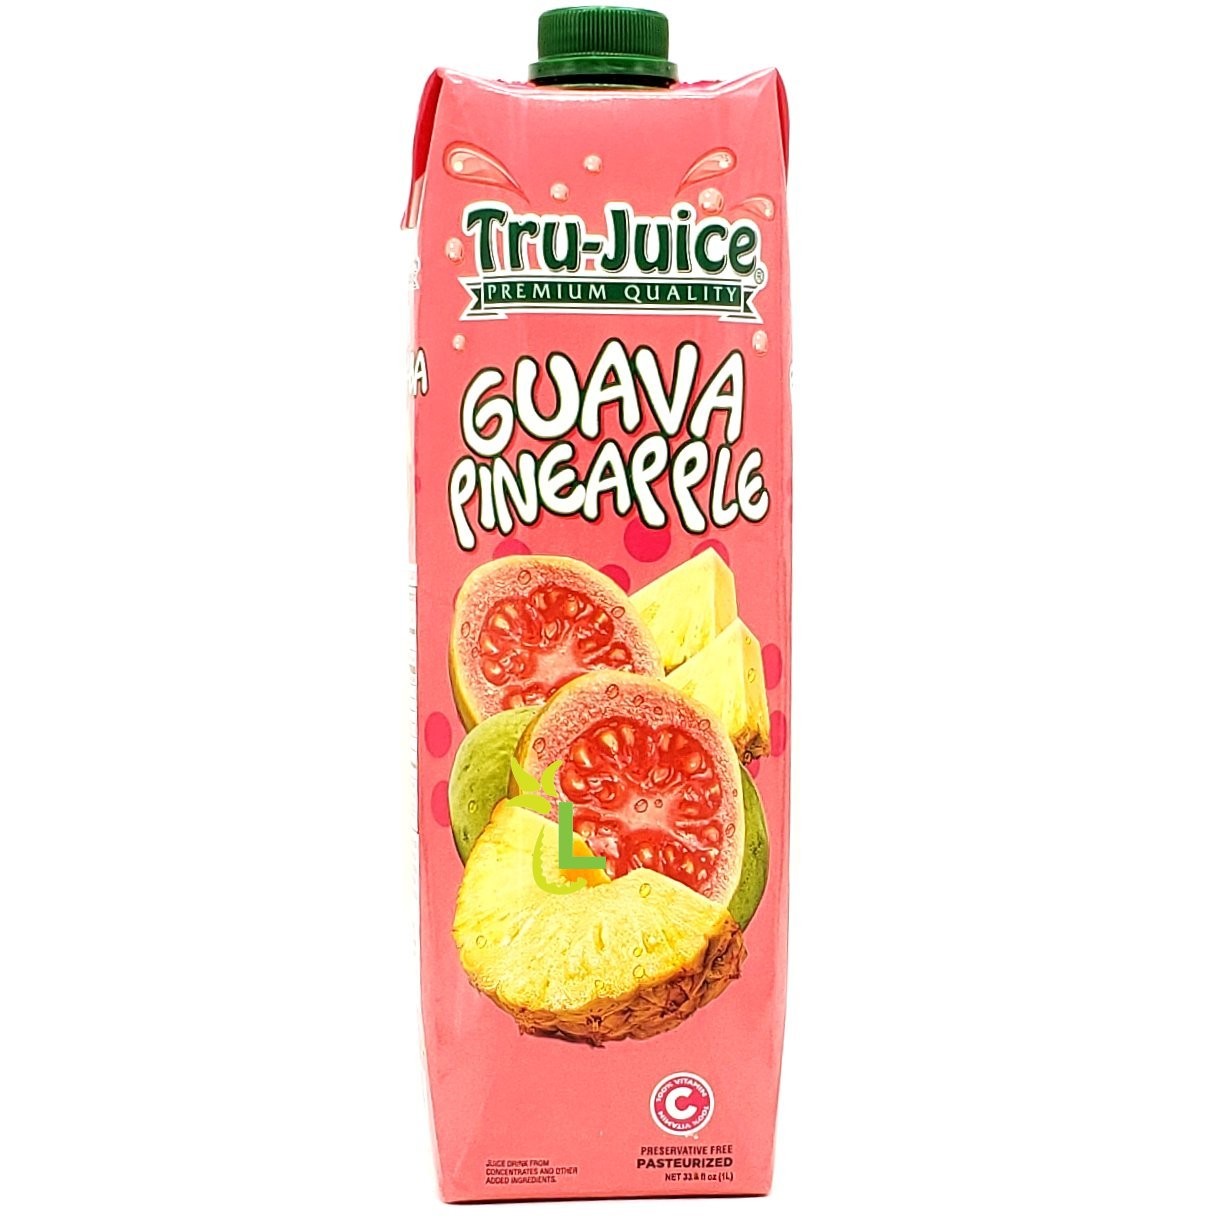 TRU-JUICE GUAVA PINEAPPLE 1L